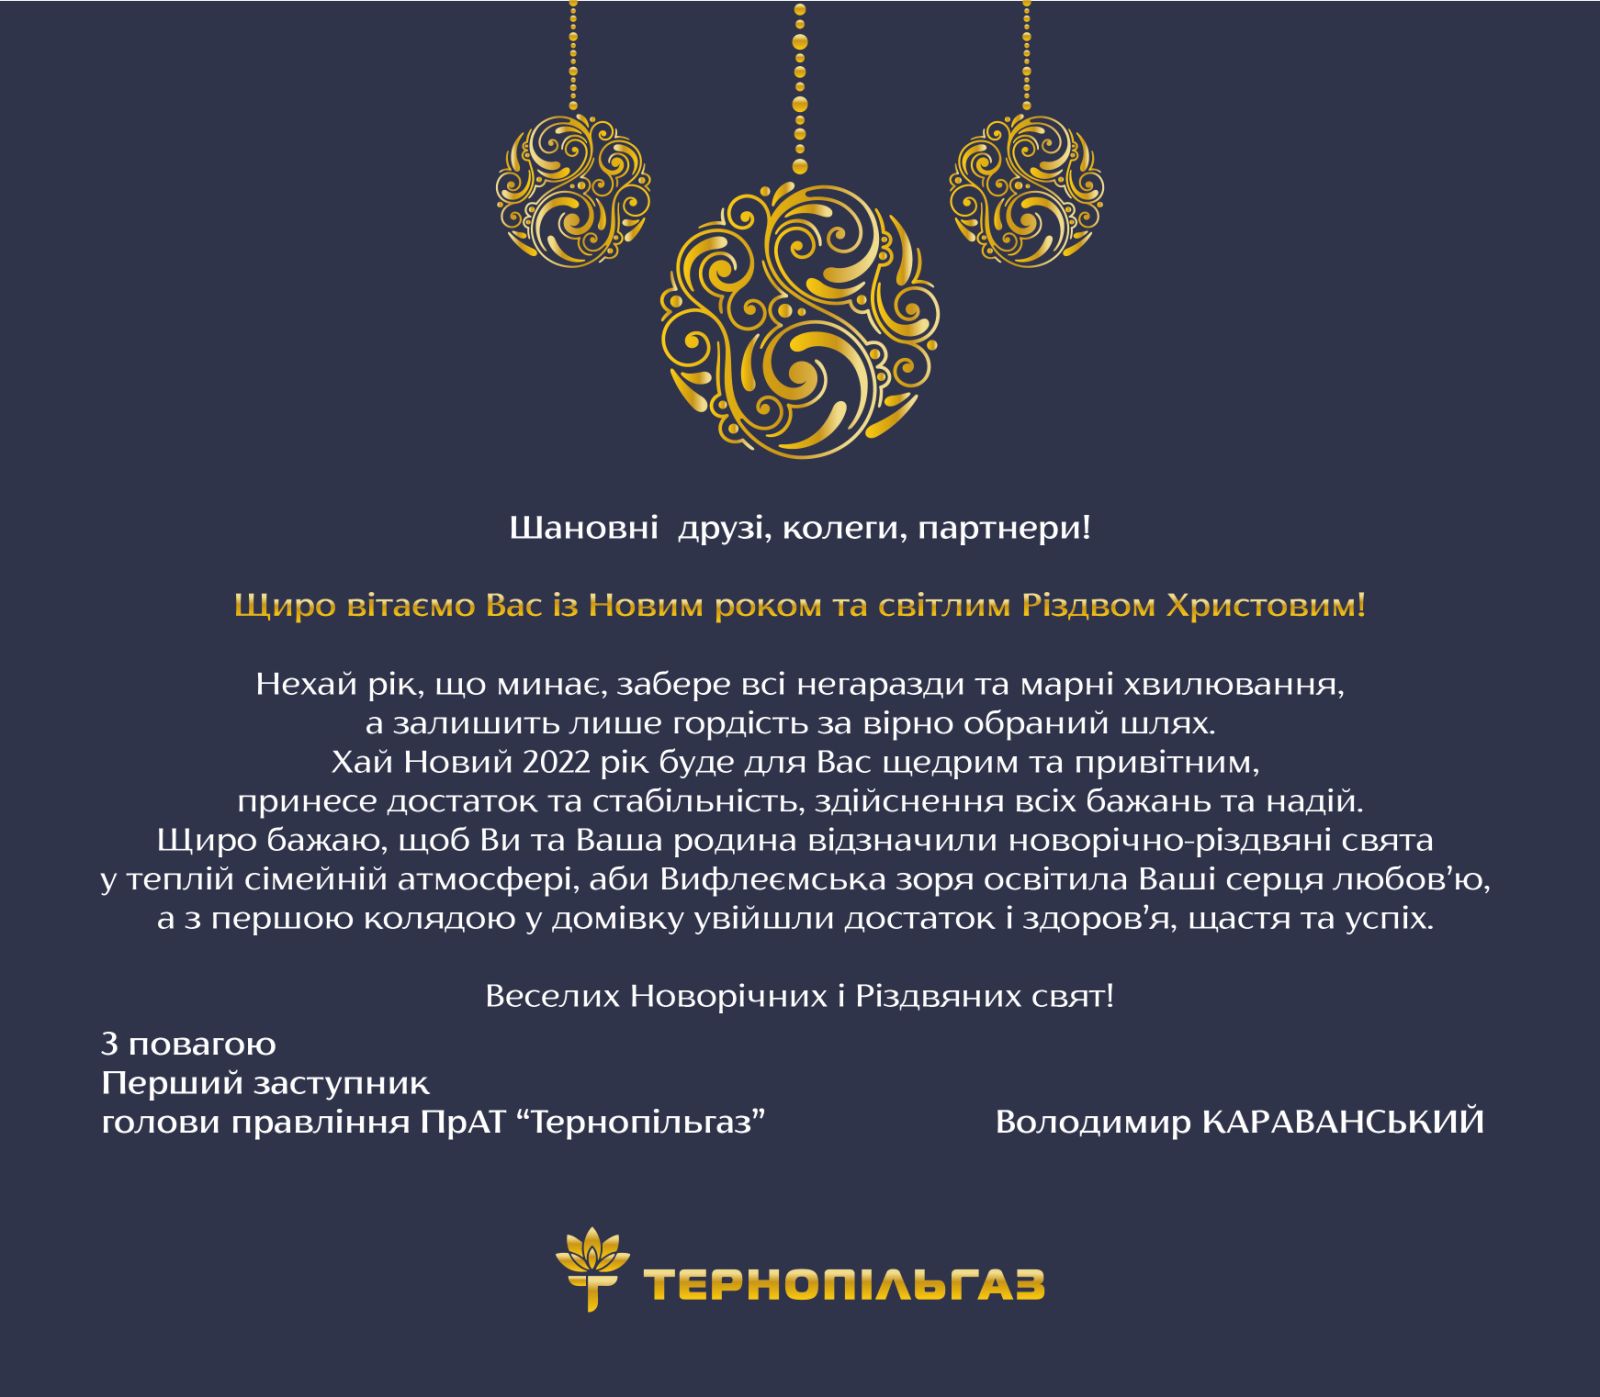 Привітання першого заступника голови правління ПрАТ «Тернопільгаз» з Новорічними та Різдвяними святами 2022!